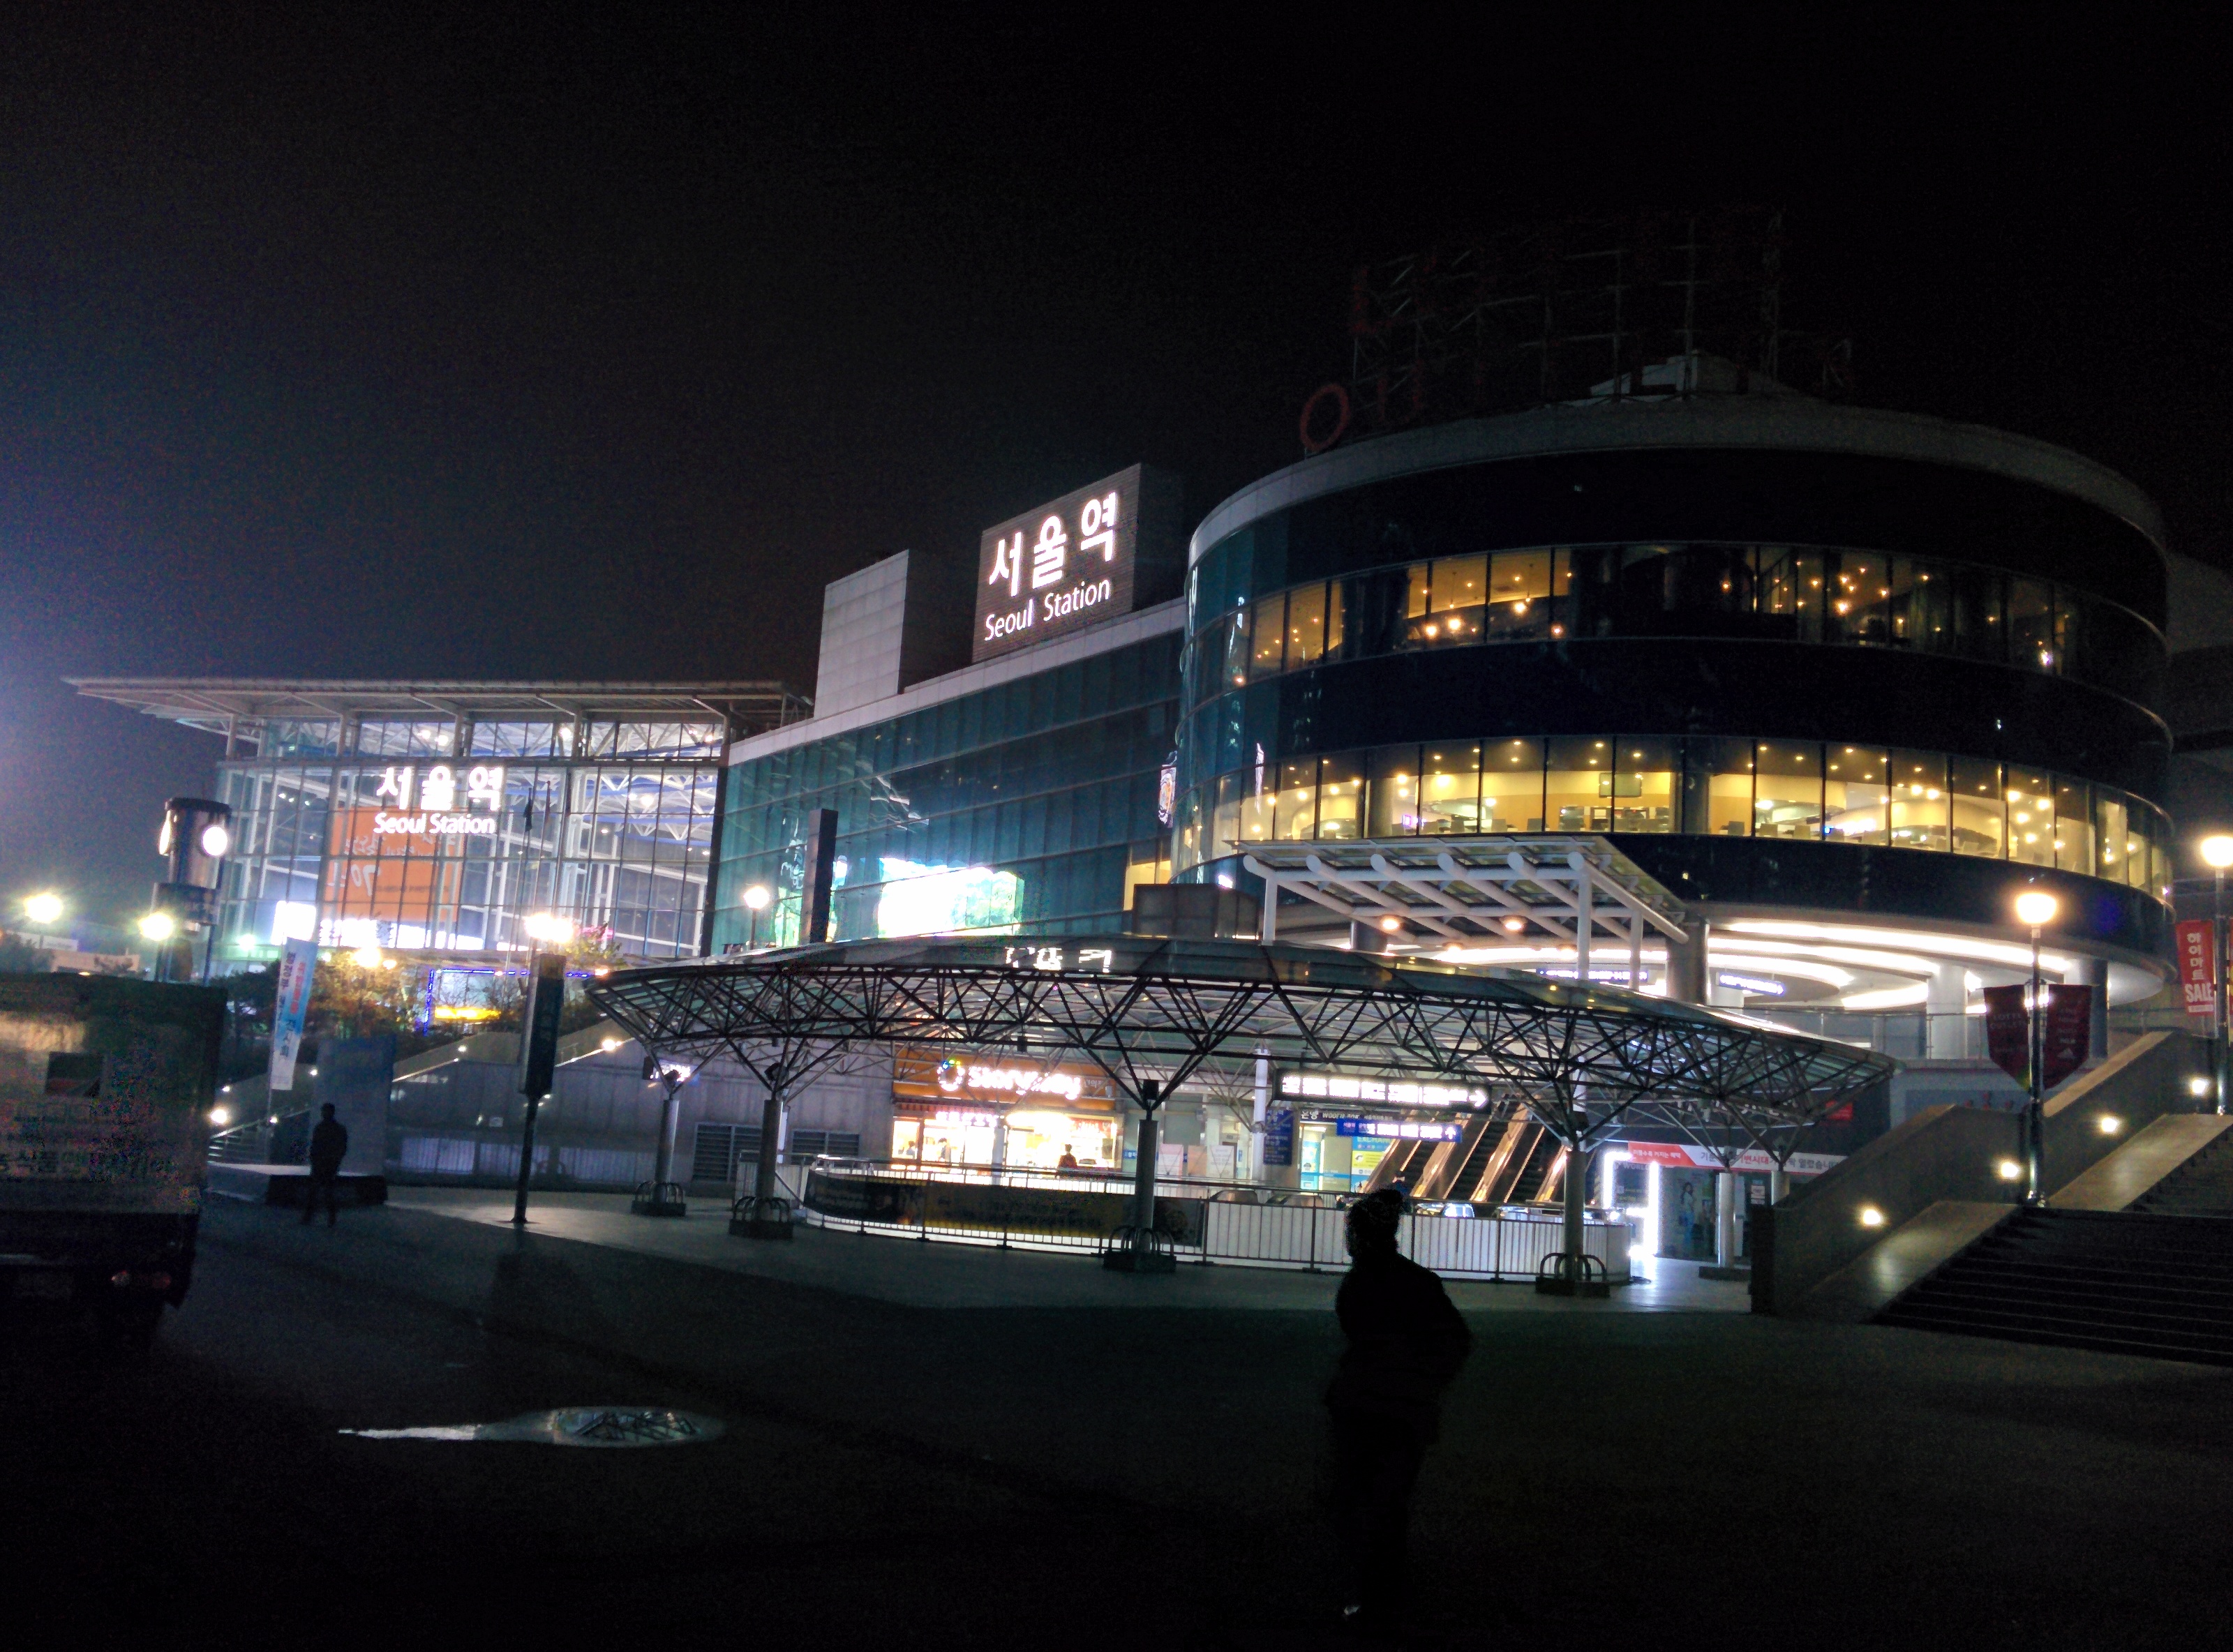 IMG_20151110_062402.jpg 새벽의 서울역 풍경